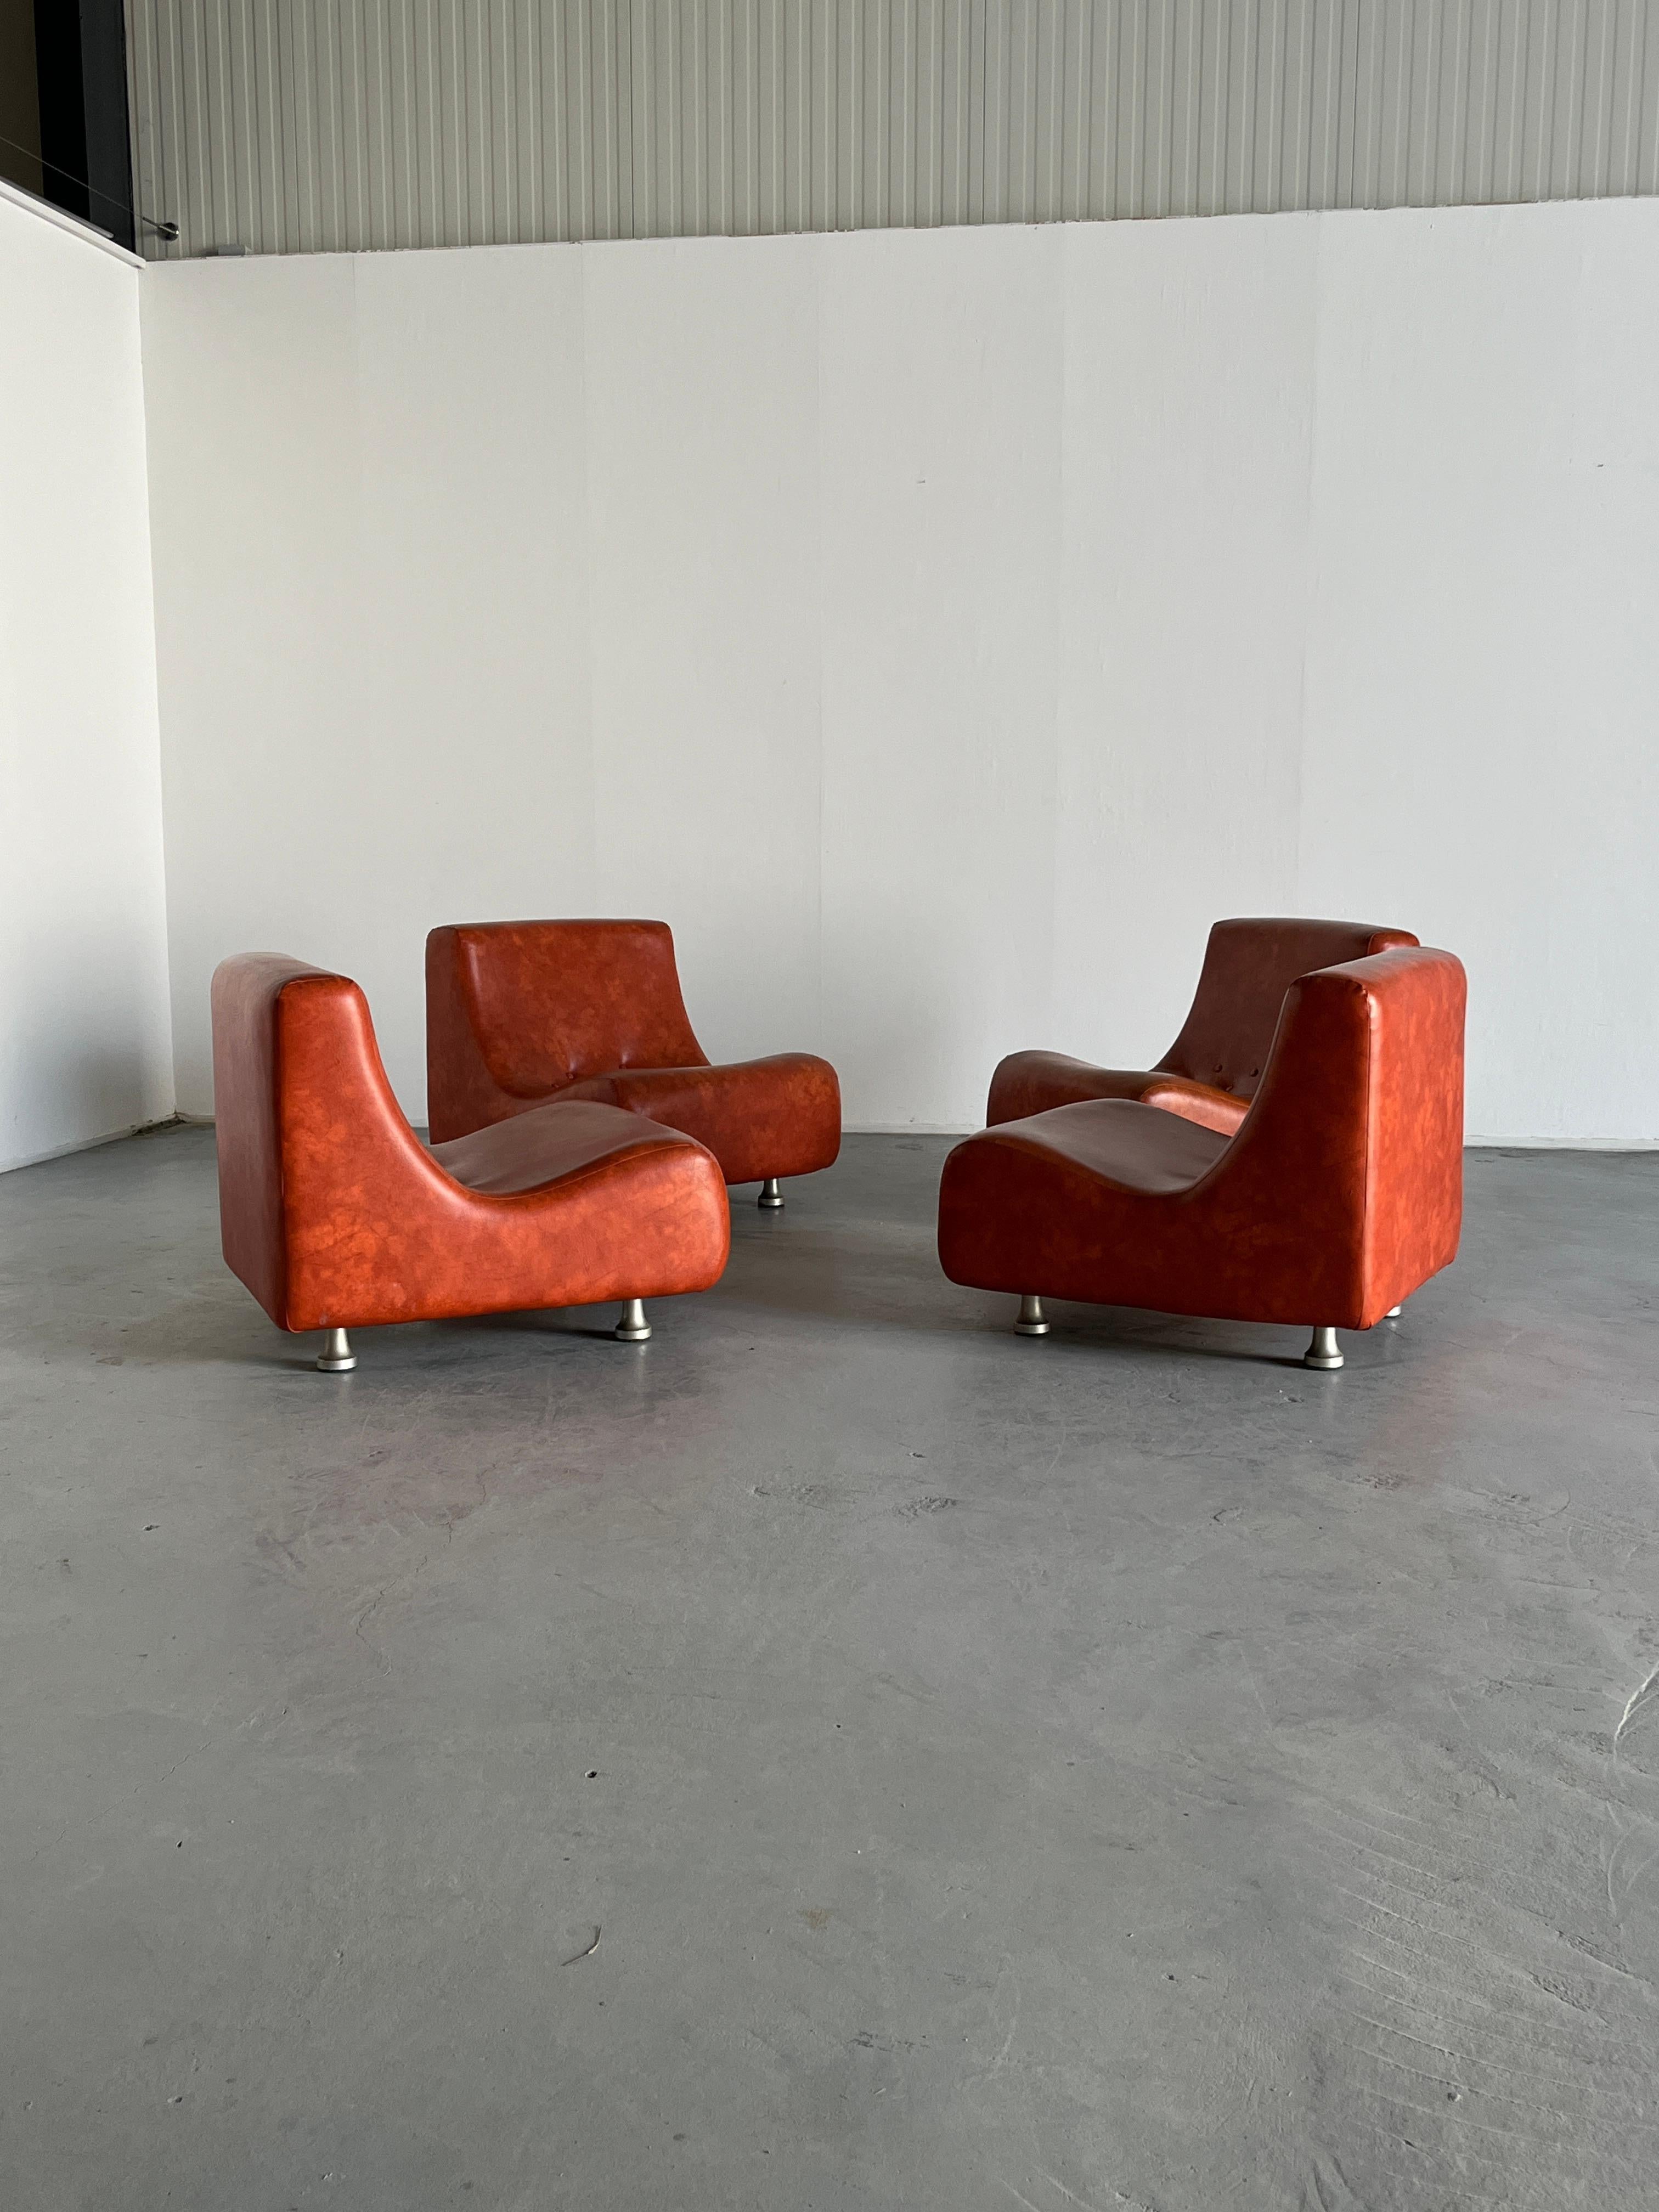 Fin du 20e siècle Sofa modulaire italien de l'ère spatiale, faux cuir, dans le style COR, années 70, Italie